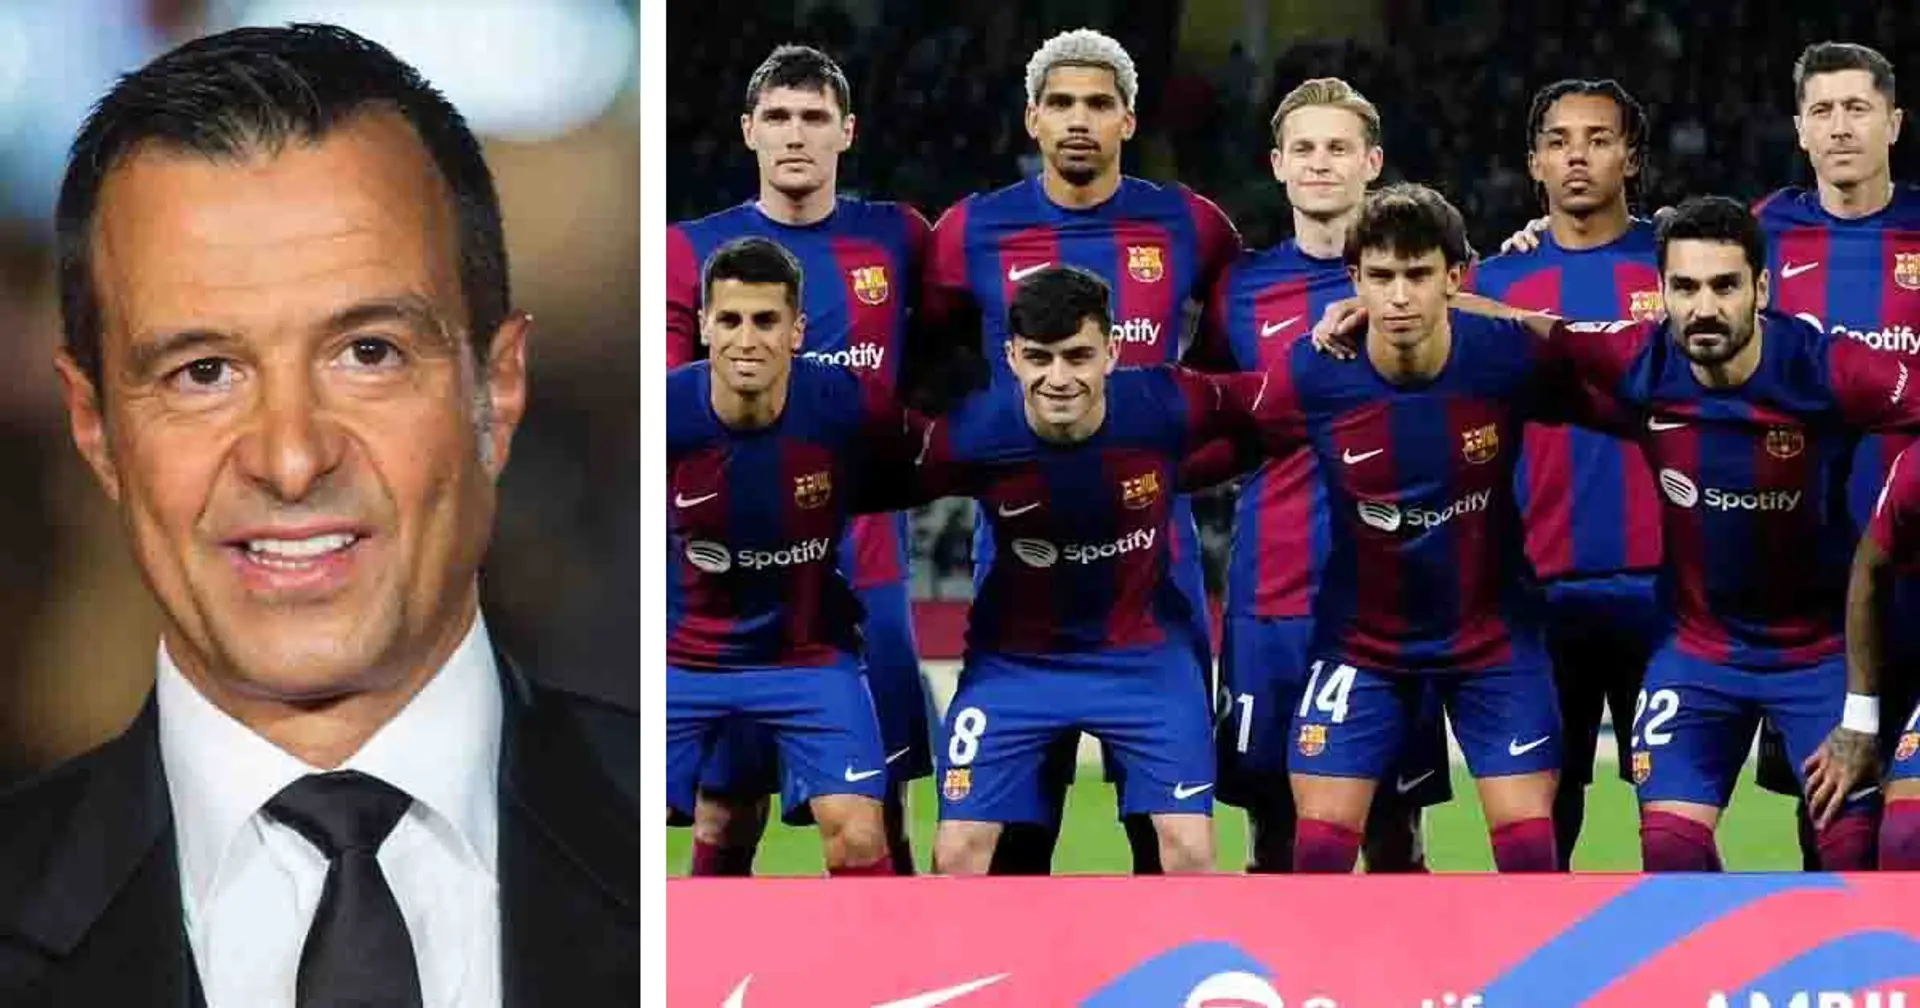 Jorge Mendes révèle que le Barça souhaite acheter deux joueurs pendant le mercato estival - l'un d'entre eux est Felix